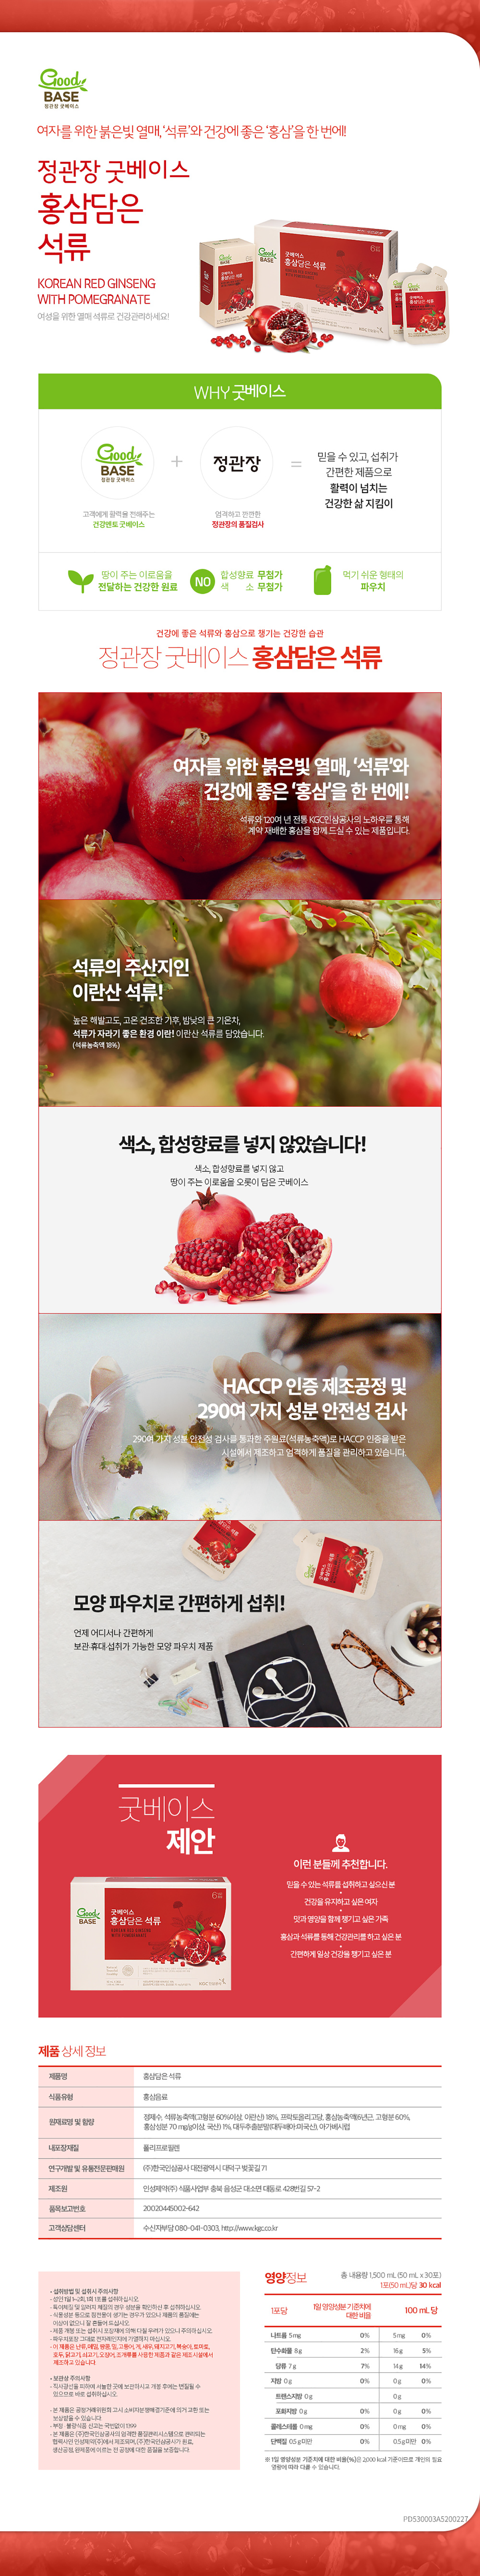 ginseng-rouge-avec-grenade-en-pochette-50ml-30-cheongkwanjang